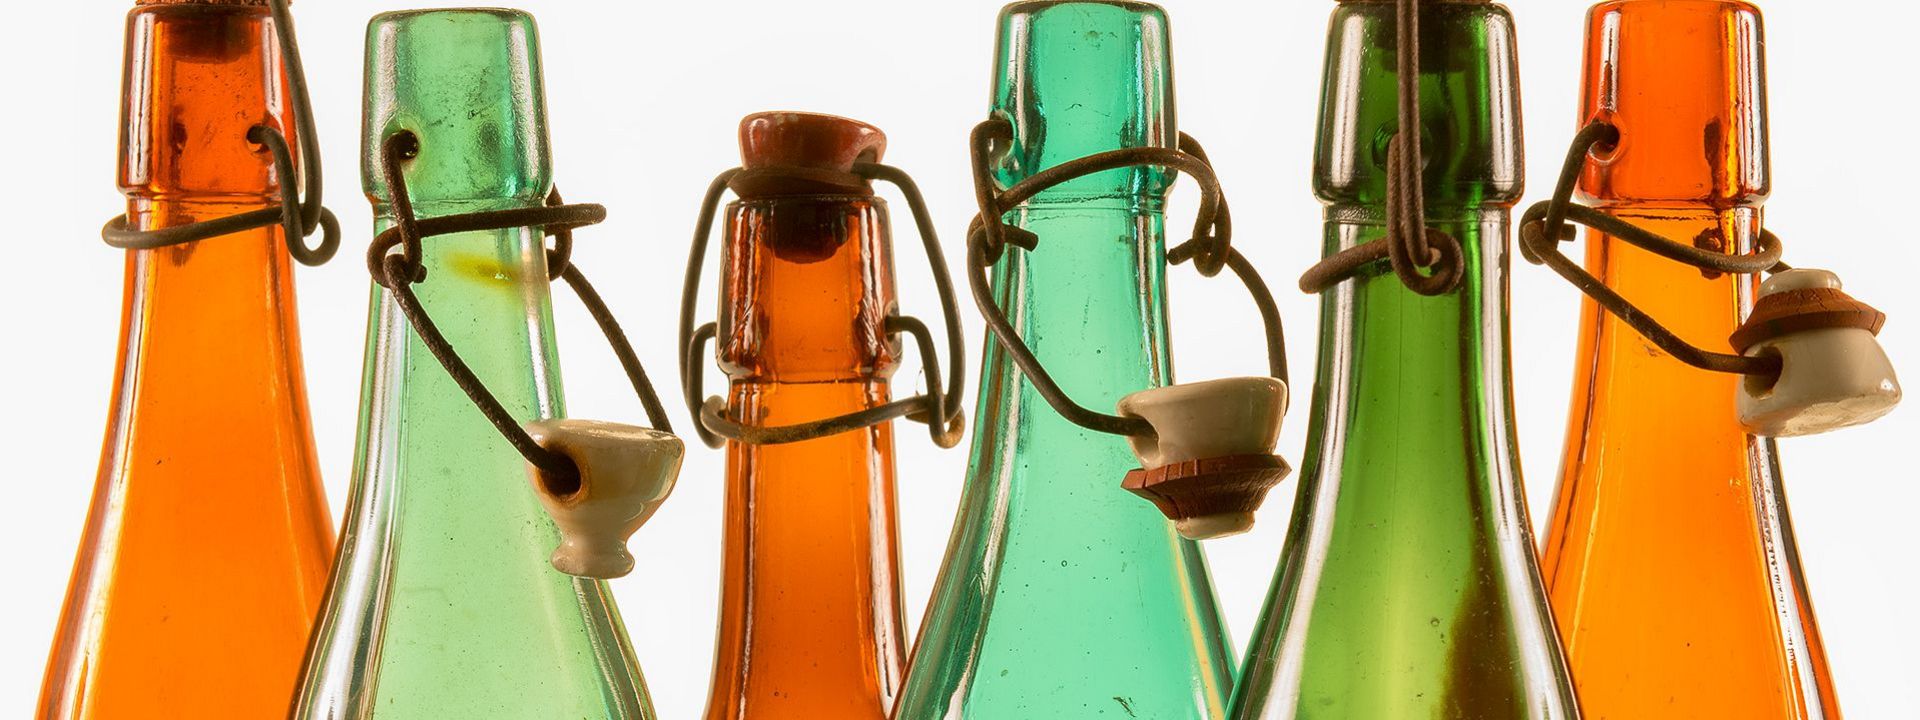 Die Flaschenhälse der historischen Bierflaschen aus braunem und grünem Glas glänzen im Gegenlicht. Ihre Bügelverschlüsse sind teilweise geöffnet.